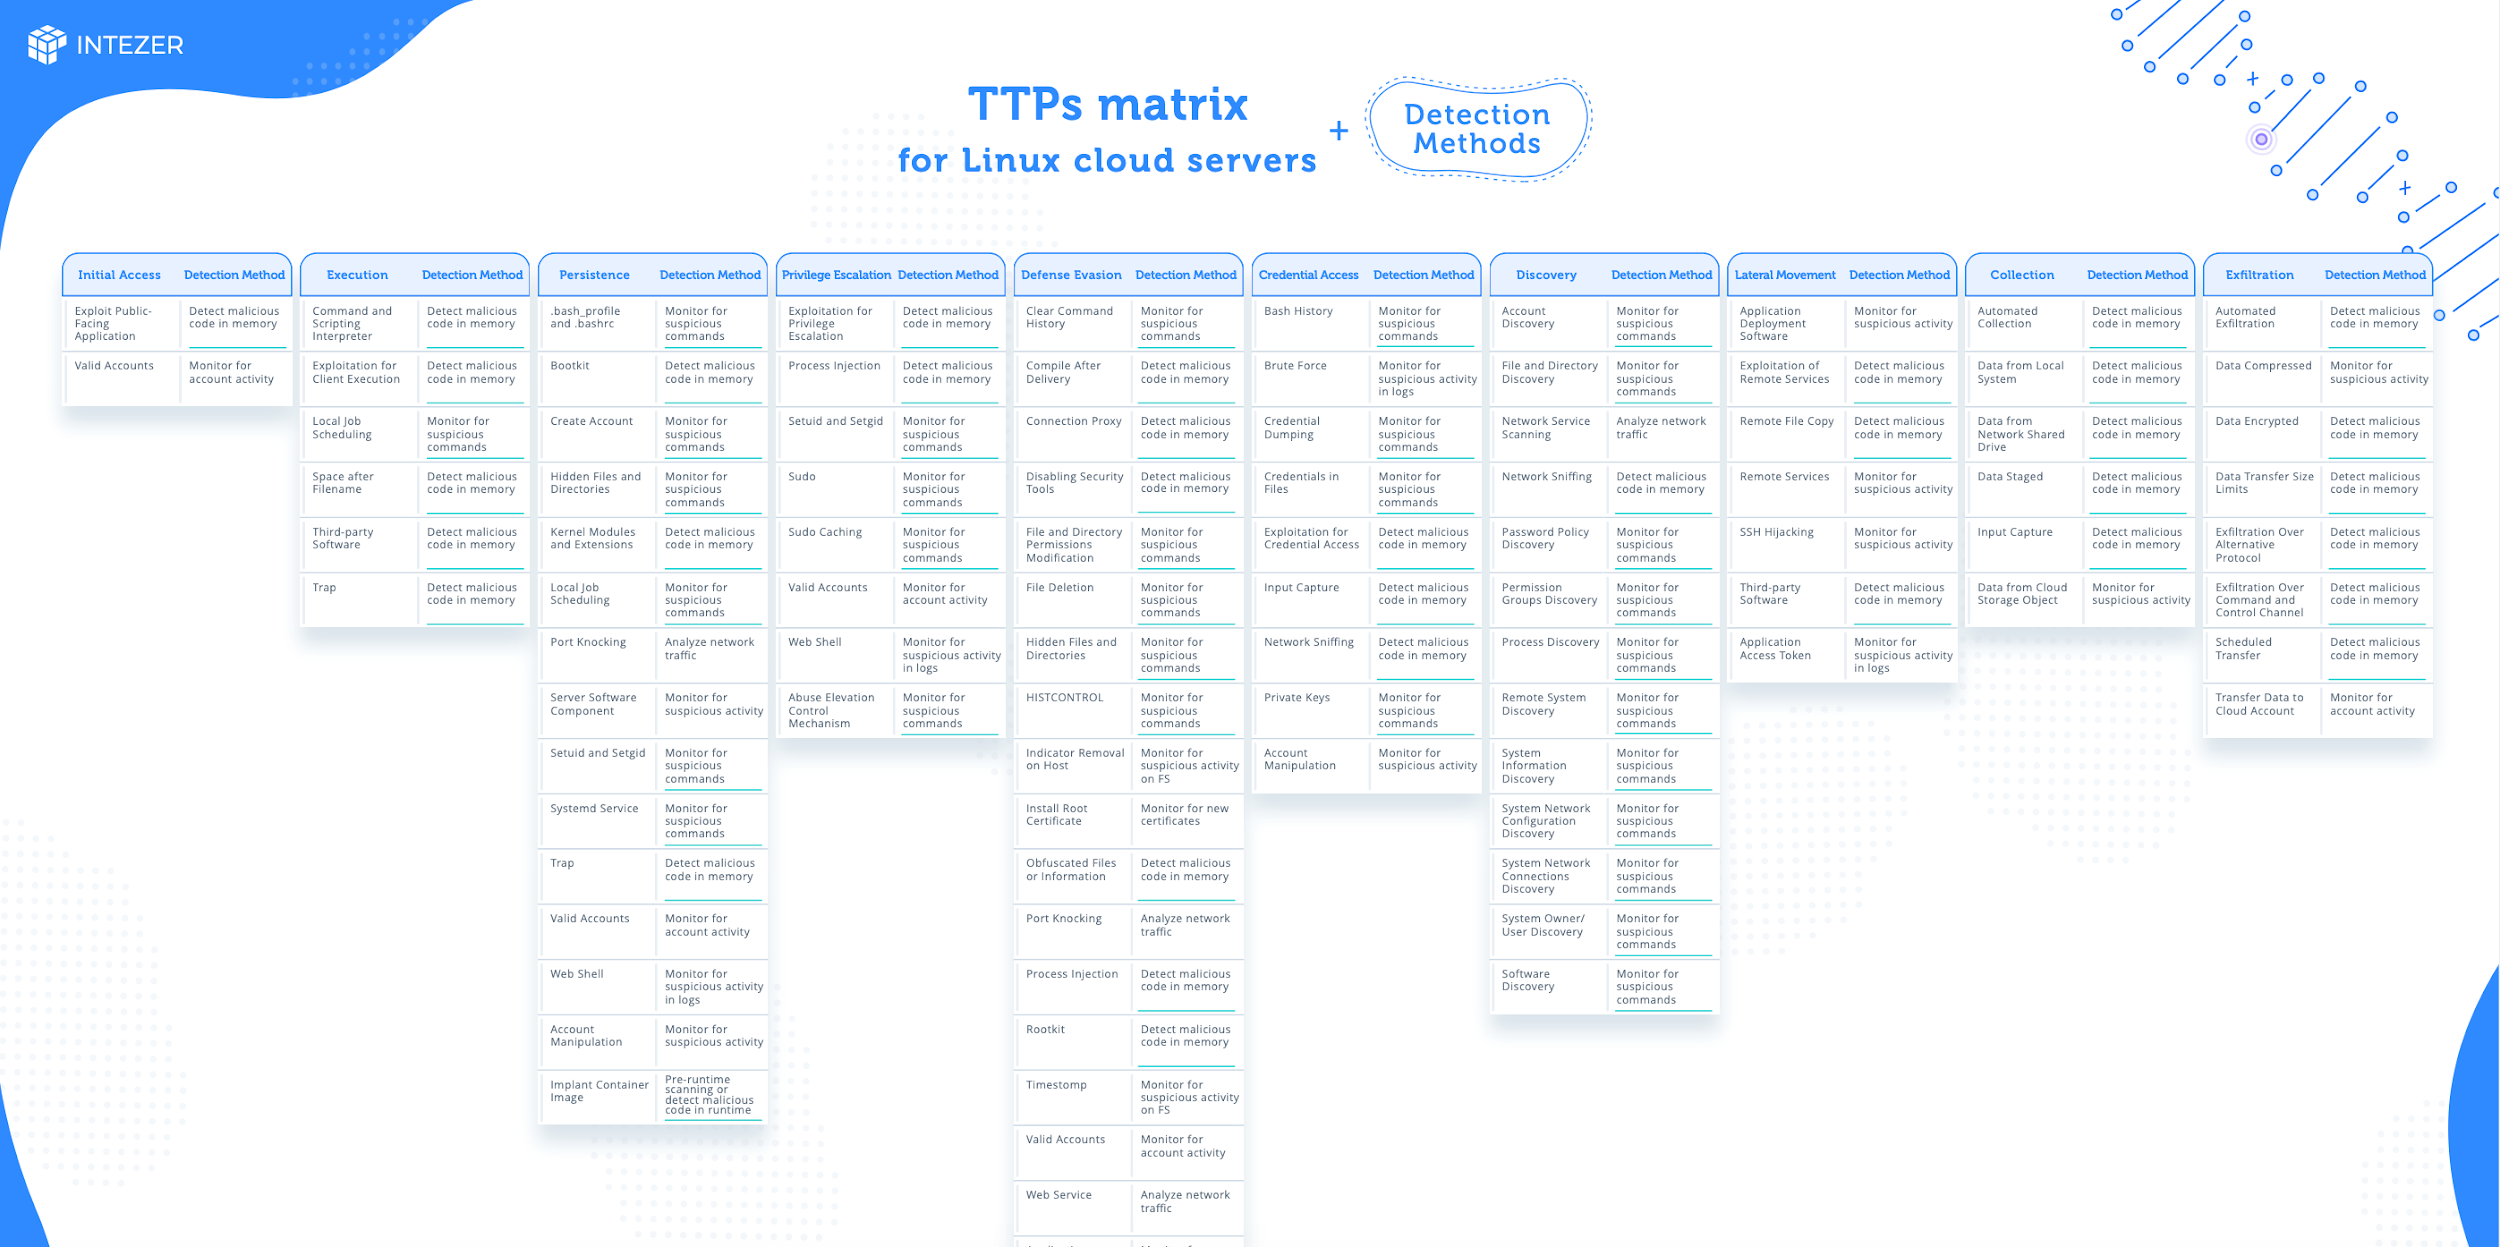 ttps matrix